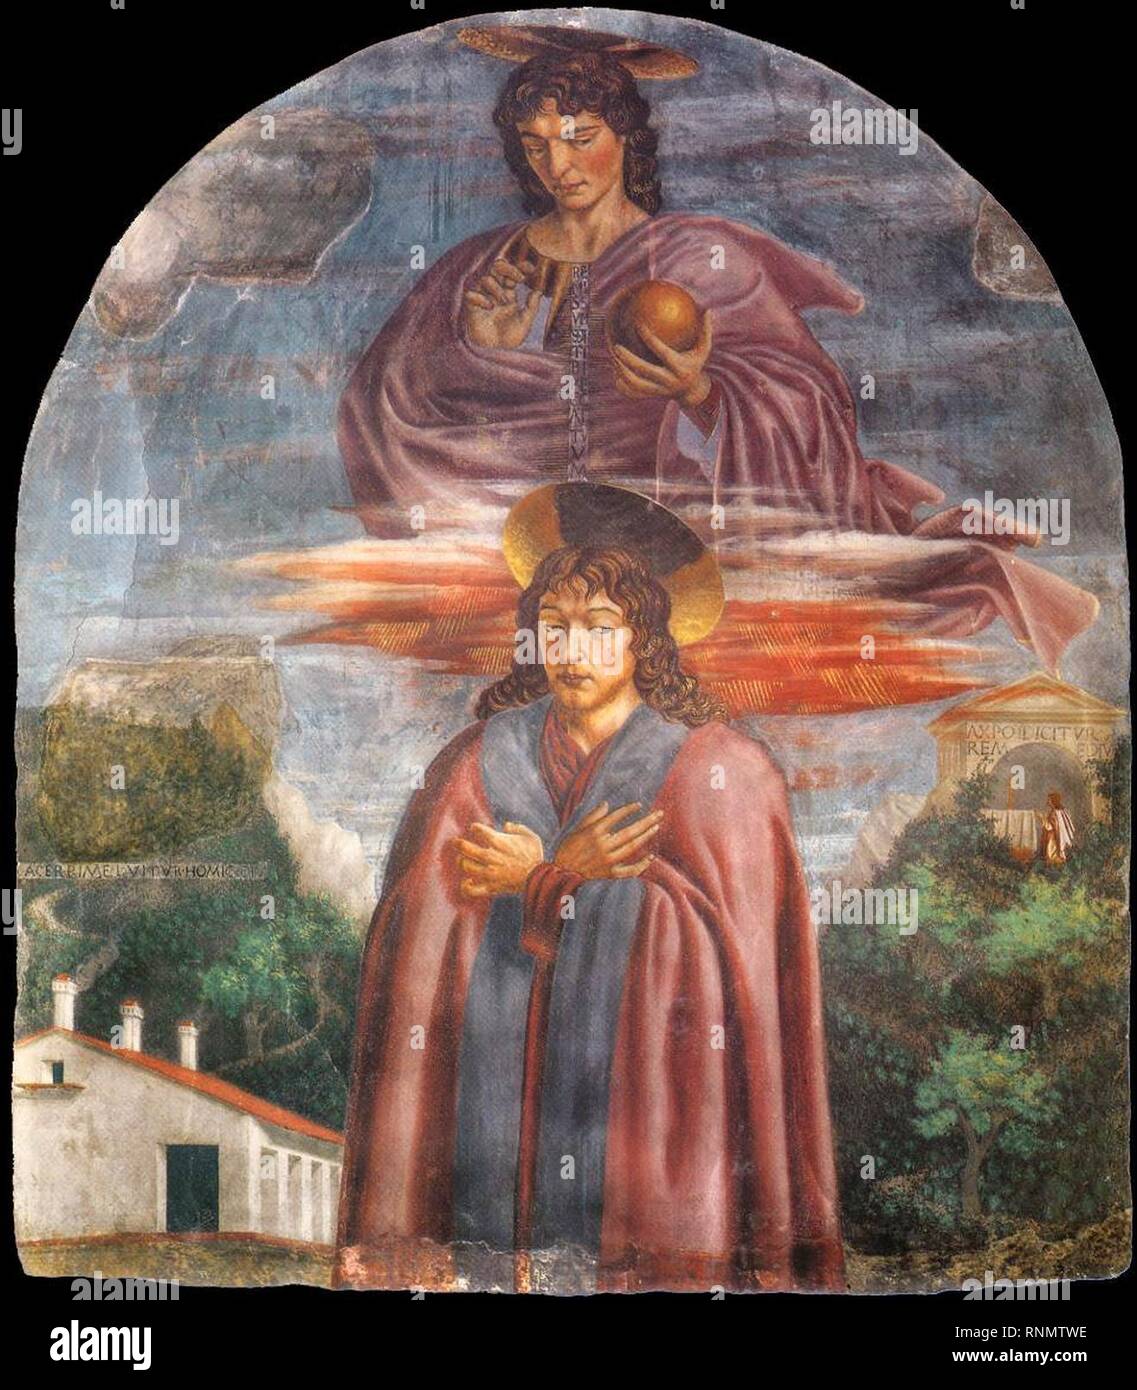 Andrea del castagno, san giuliano e il redentore. Stock Photo